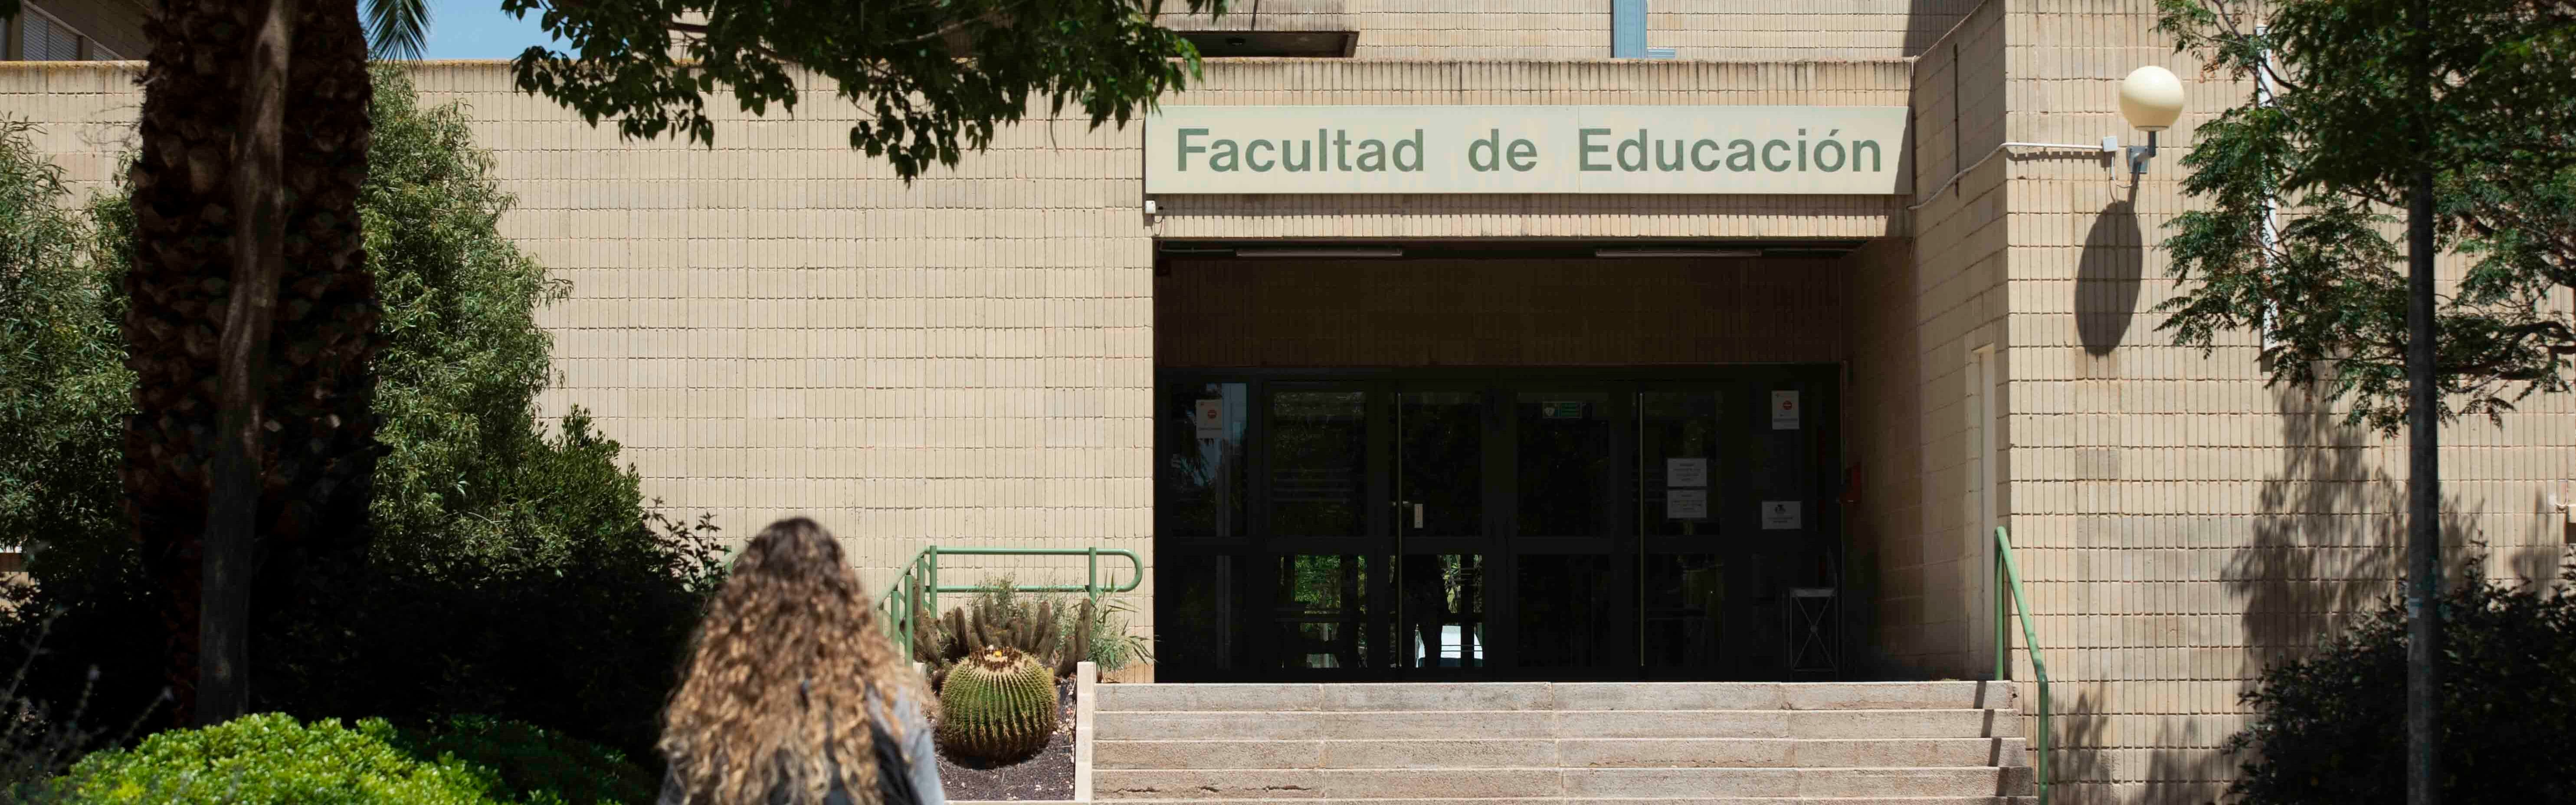 El II Congreso de Innovación reunirá el próximo lunes las iniciativas docentes más destacadas de la Universidad de Murcia